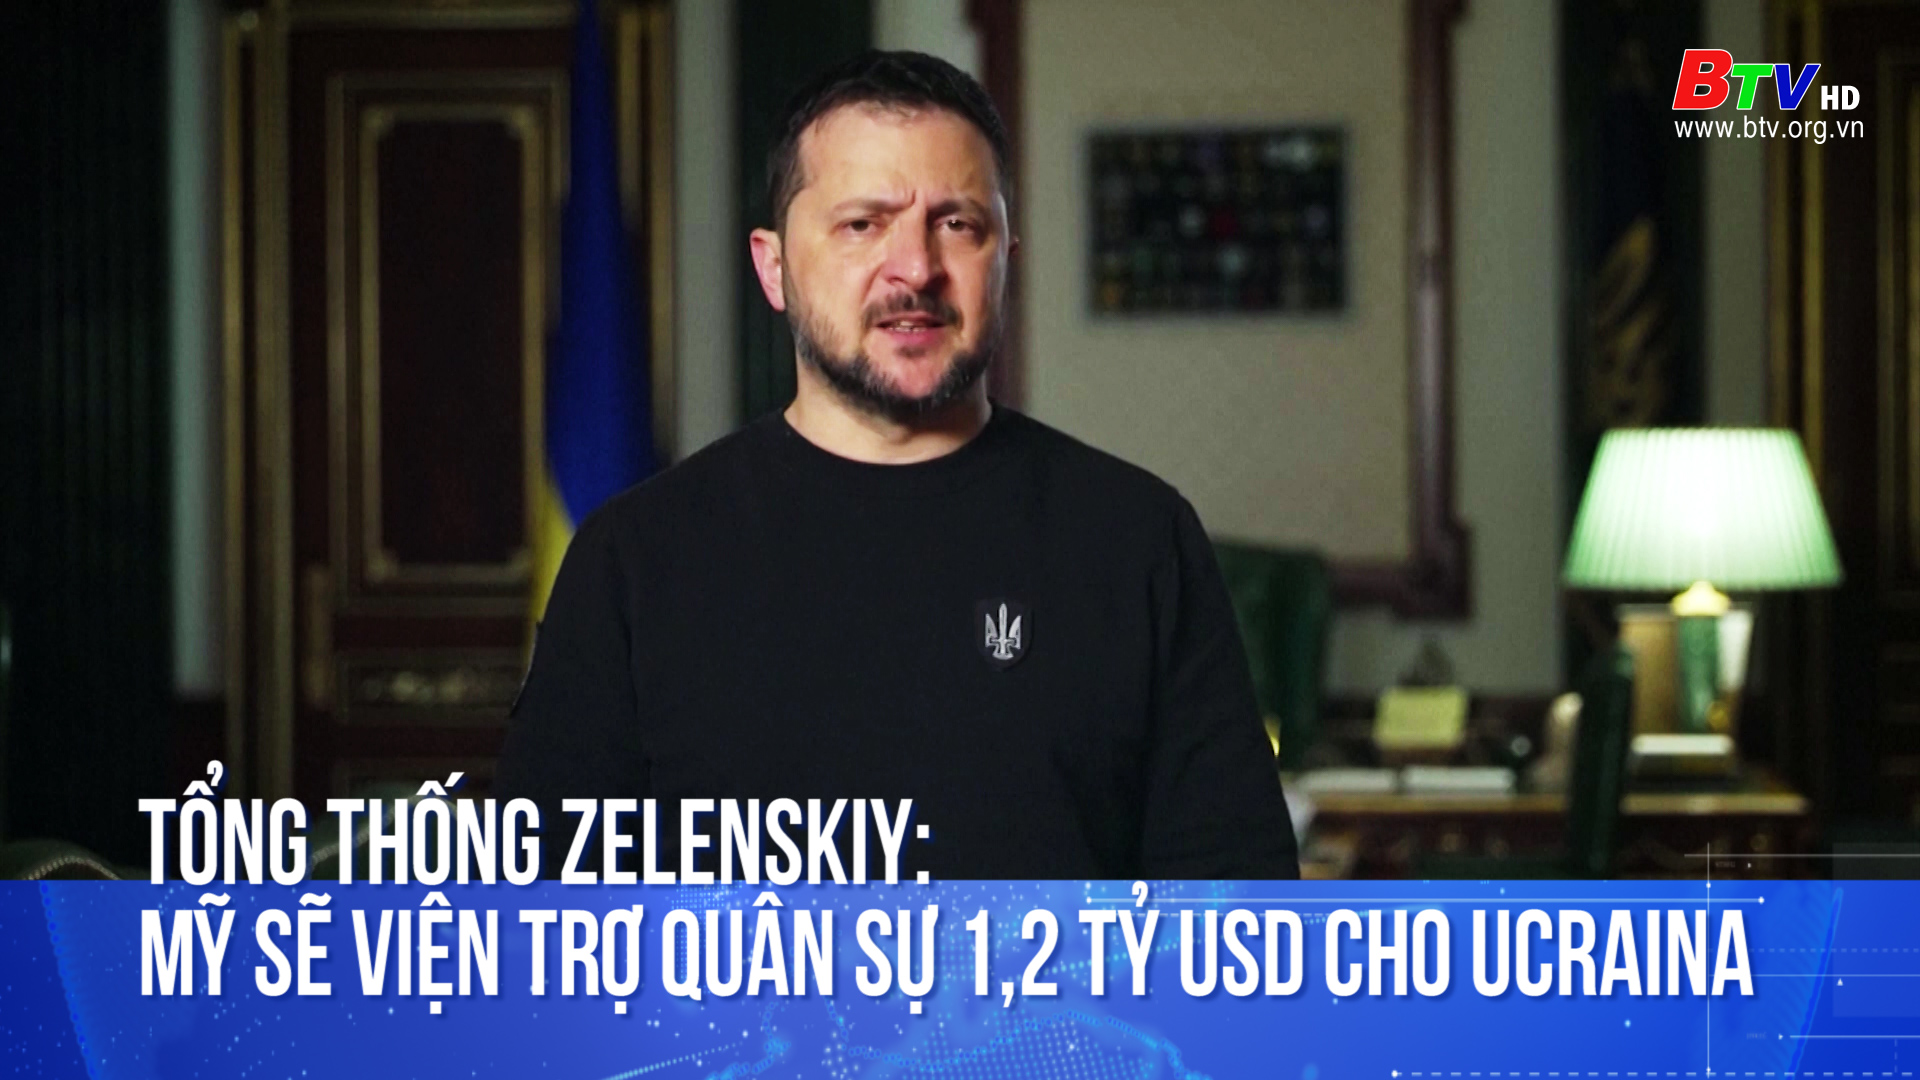 Tổng thống Zelenskiy: Mỹ sẽ viện trợ quân sự 1,2 tỷ USD cho Ucraina